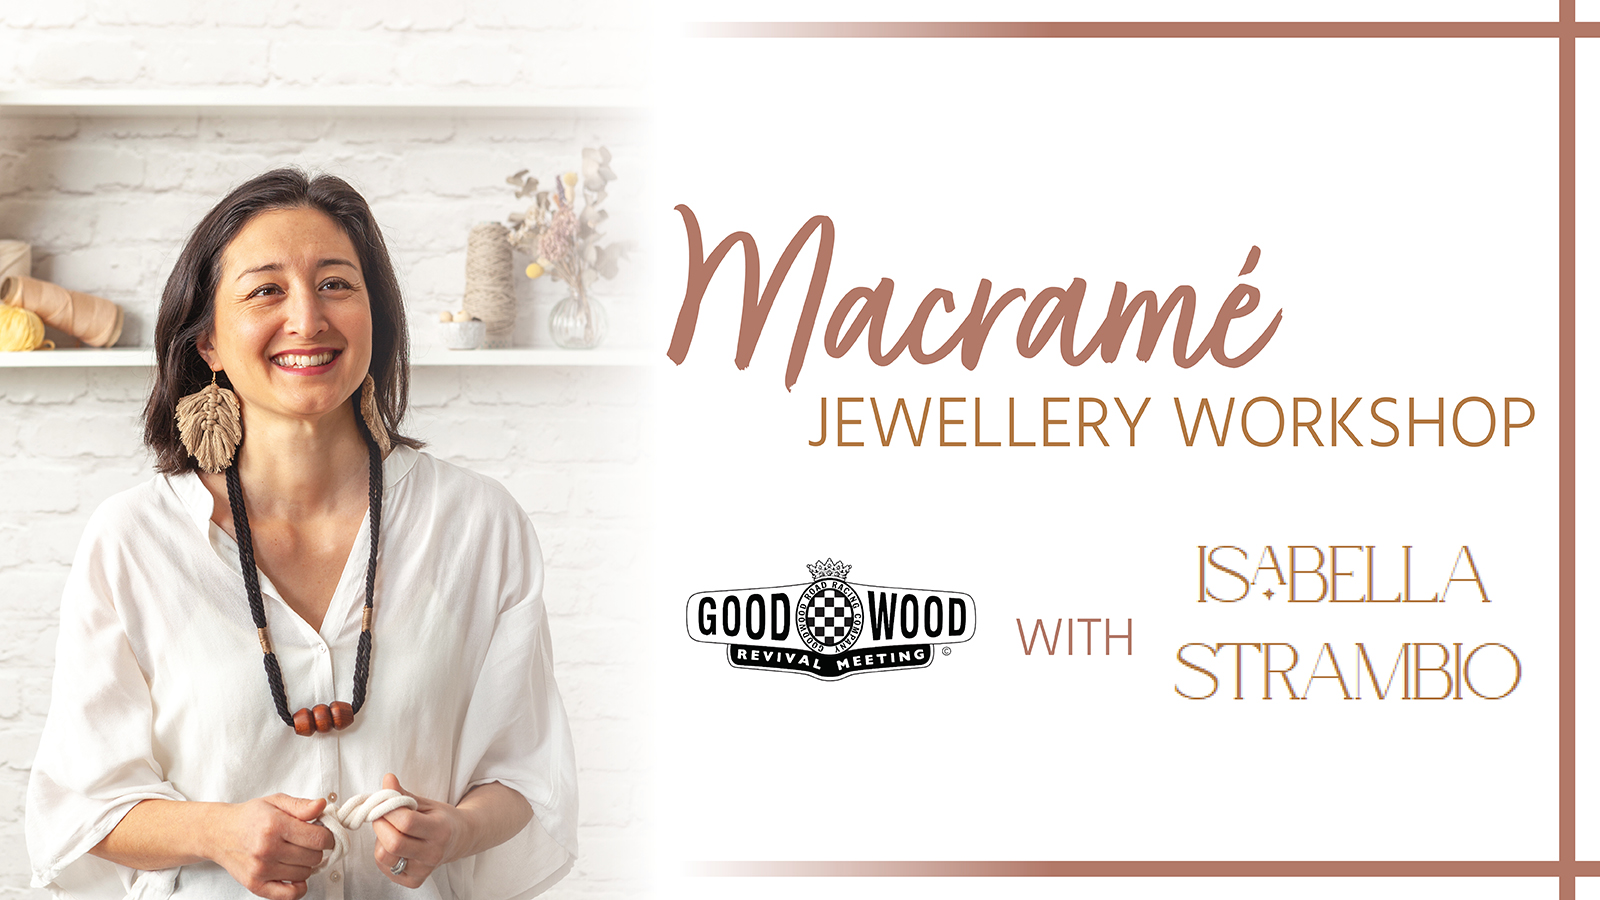 Macramé Jewellery Workshop at Goodwood Revival